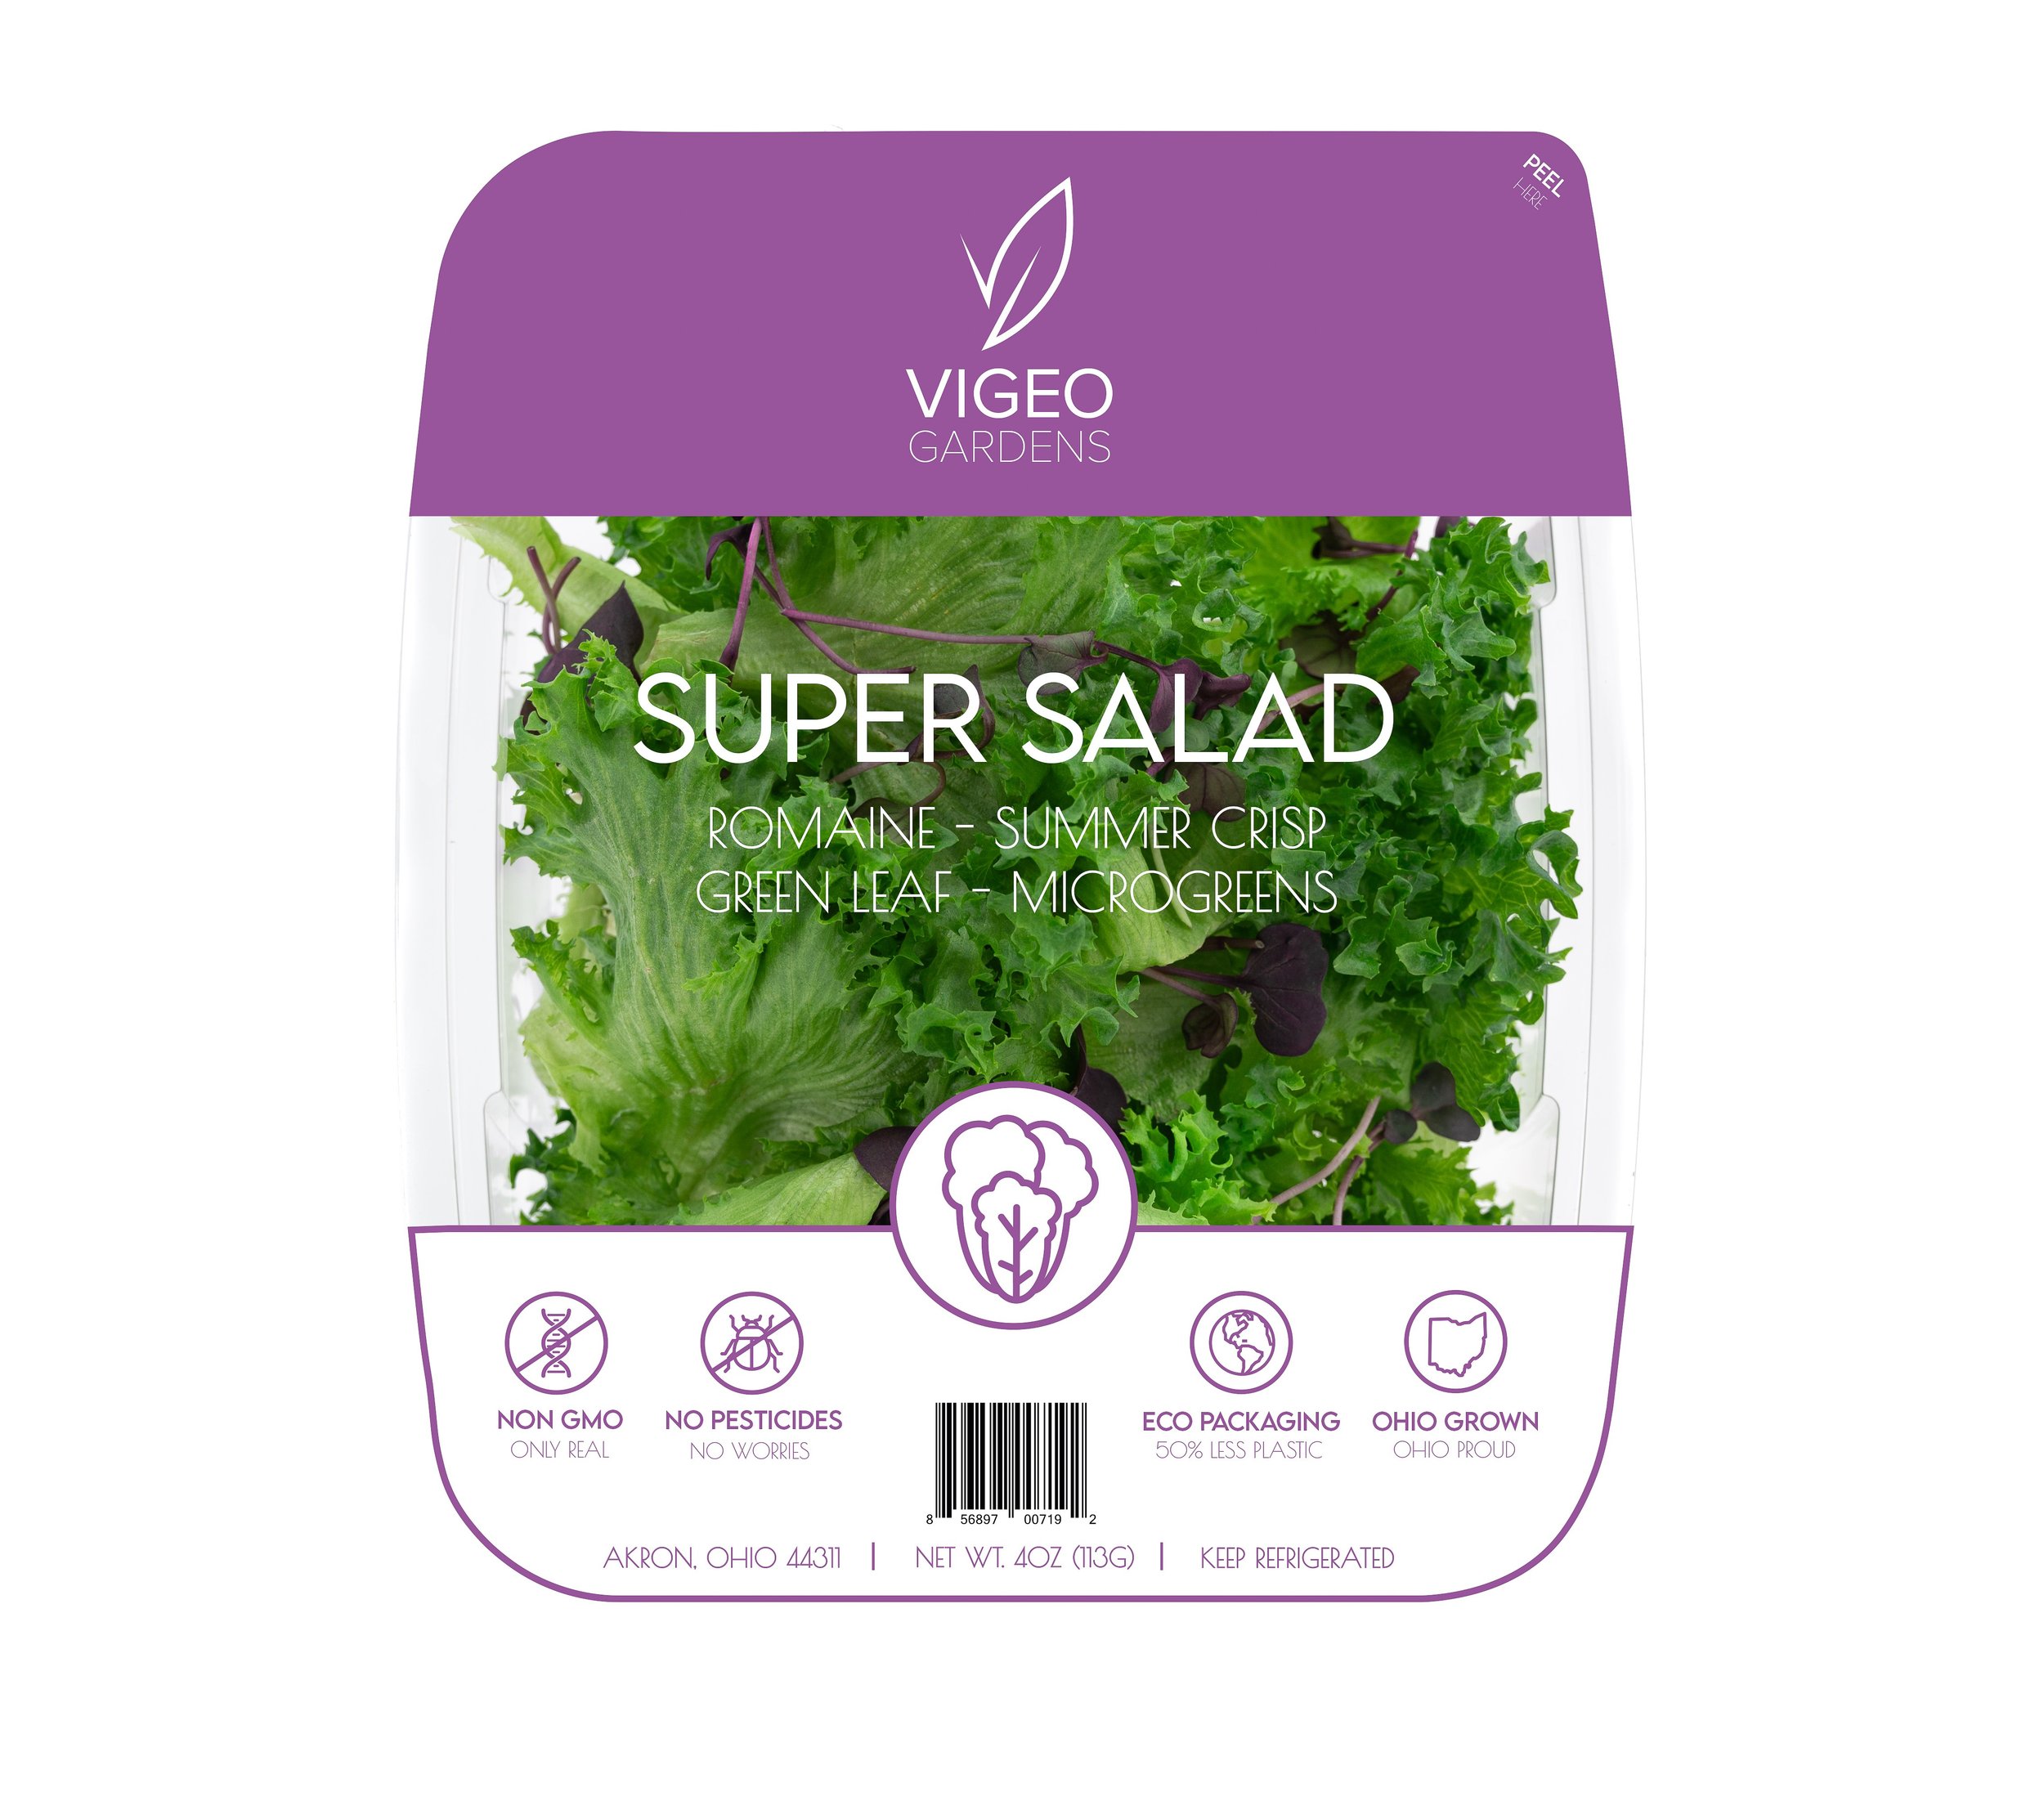 Data - Marketing - Product Shot - Super Salad FST-65 - 2MB Limit.jpg